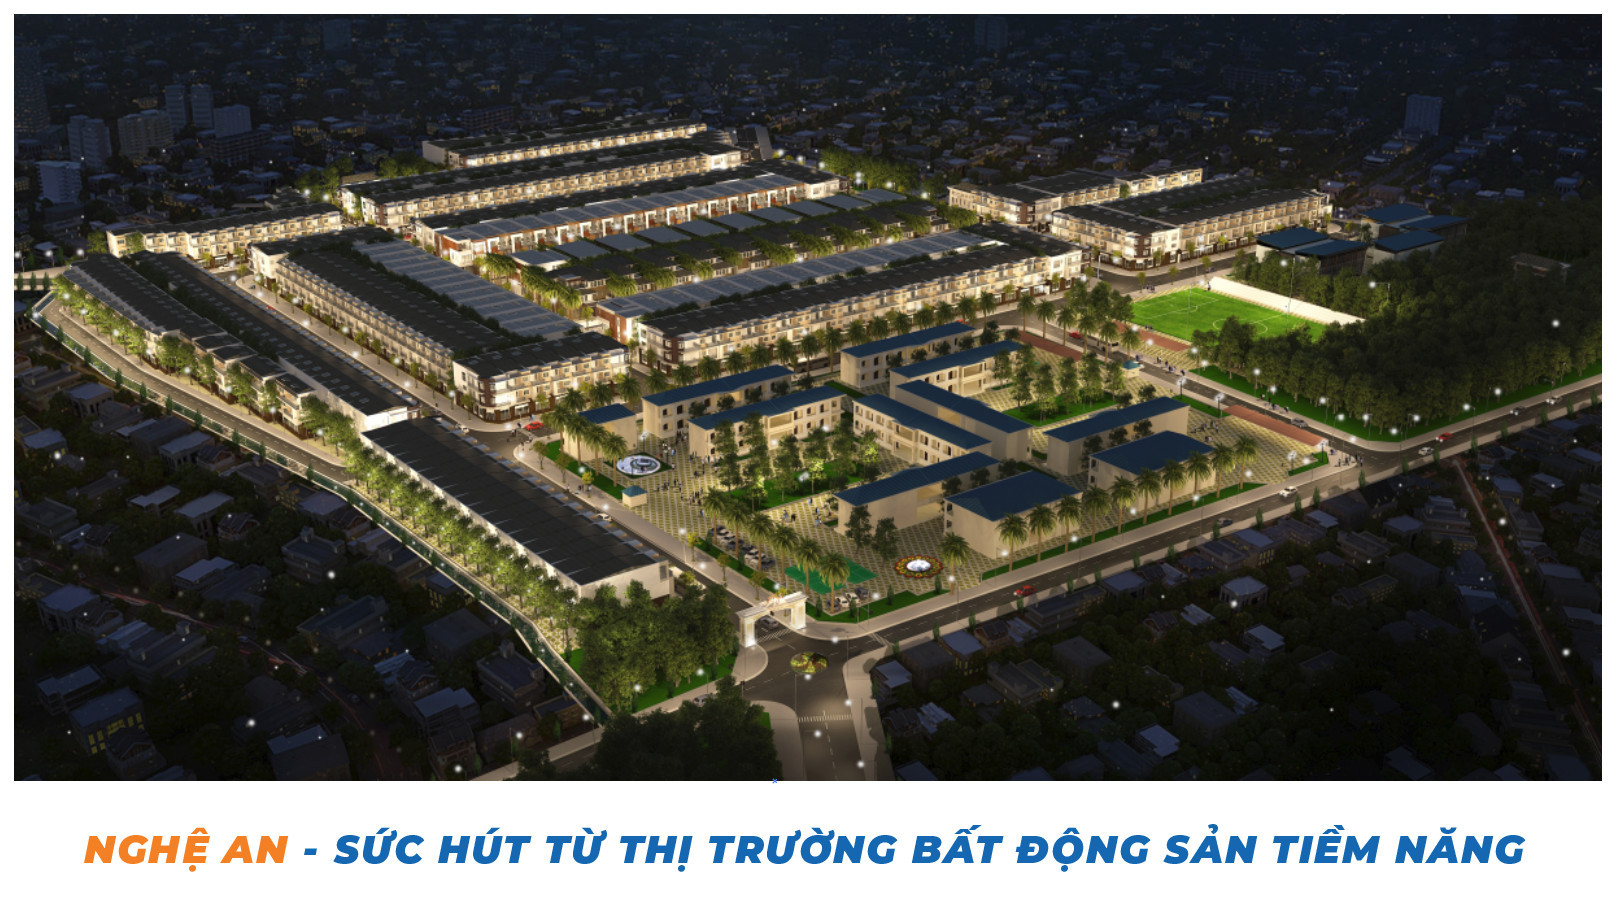 Nghệ An là một trong những thị trường tiềm năng nhất trên thị trường bất động sản Việt Nam hậu Covid-19